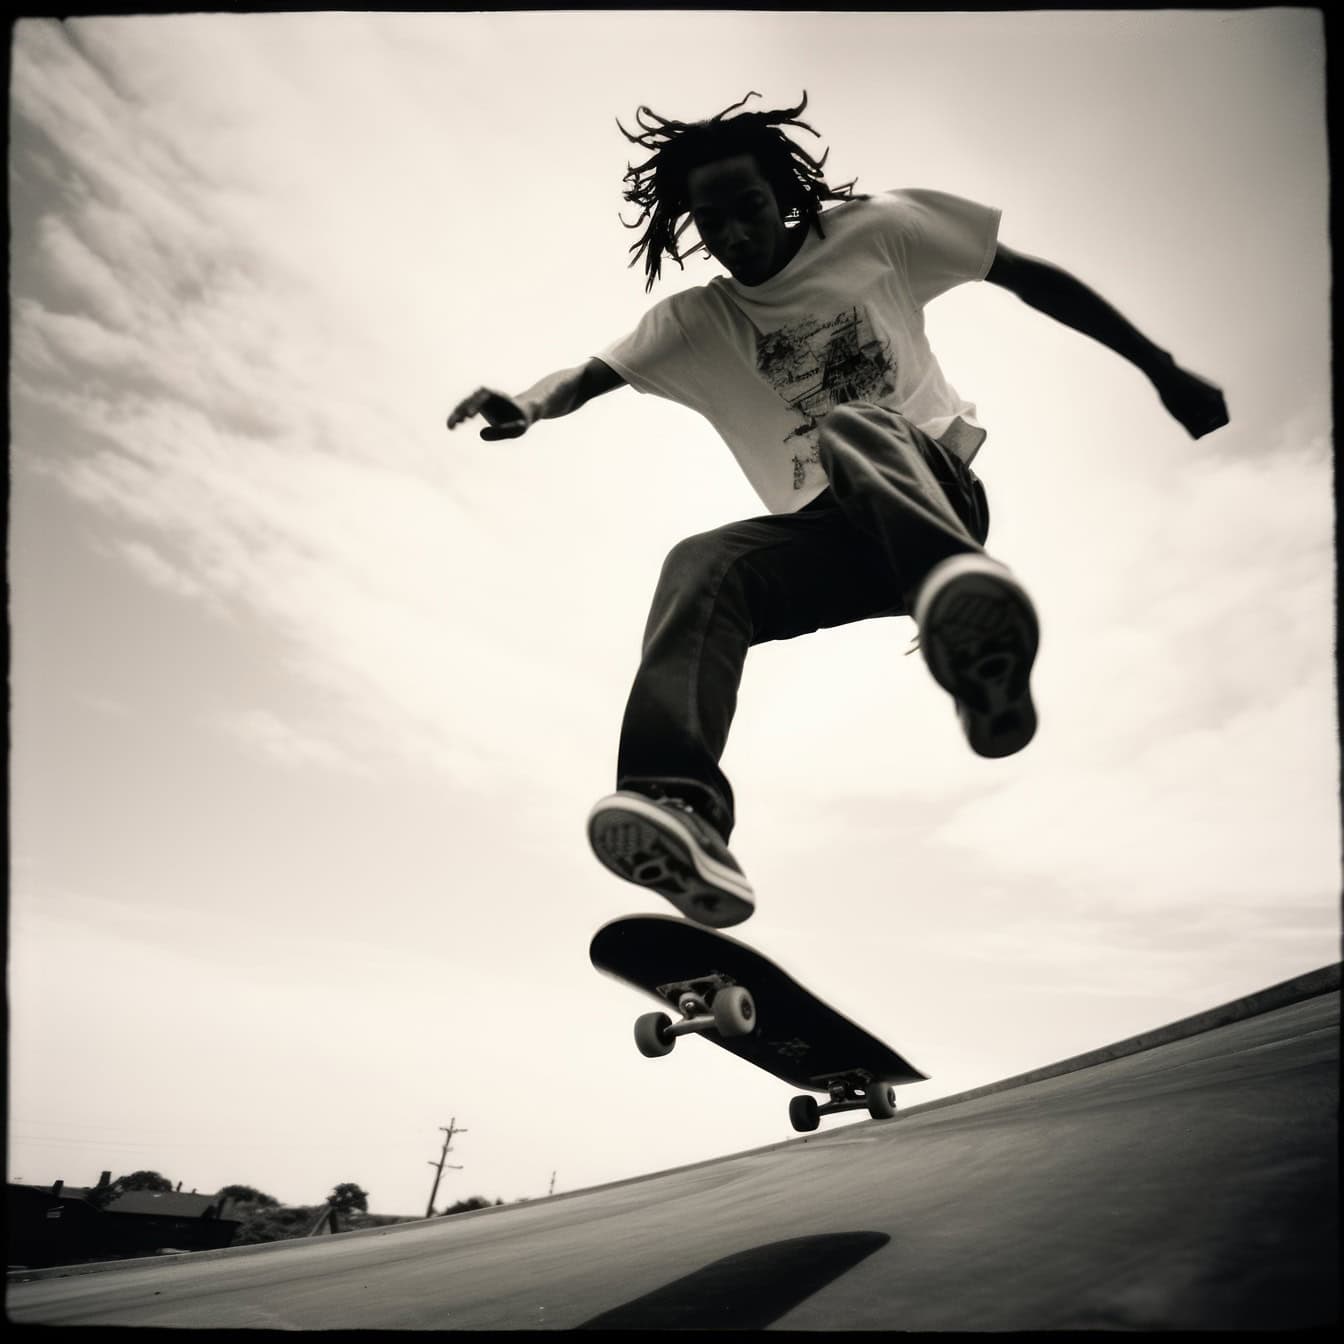 O fotografie polaroid veche alb-negru a unei siluete a unui bărbat afro-american sărind în aer pe un skateboard ca un cascador